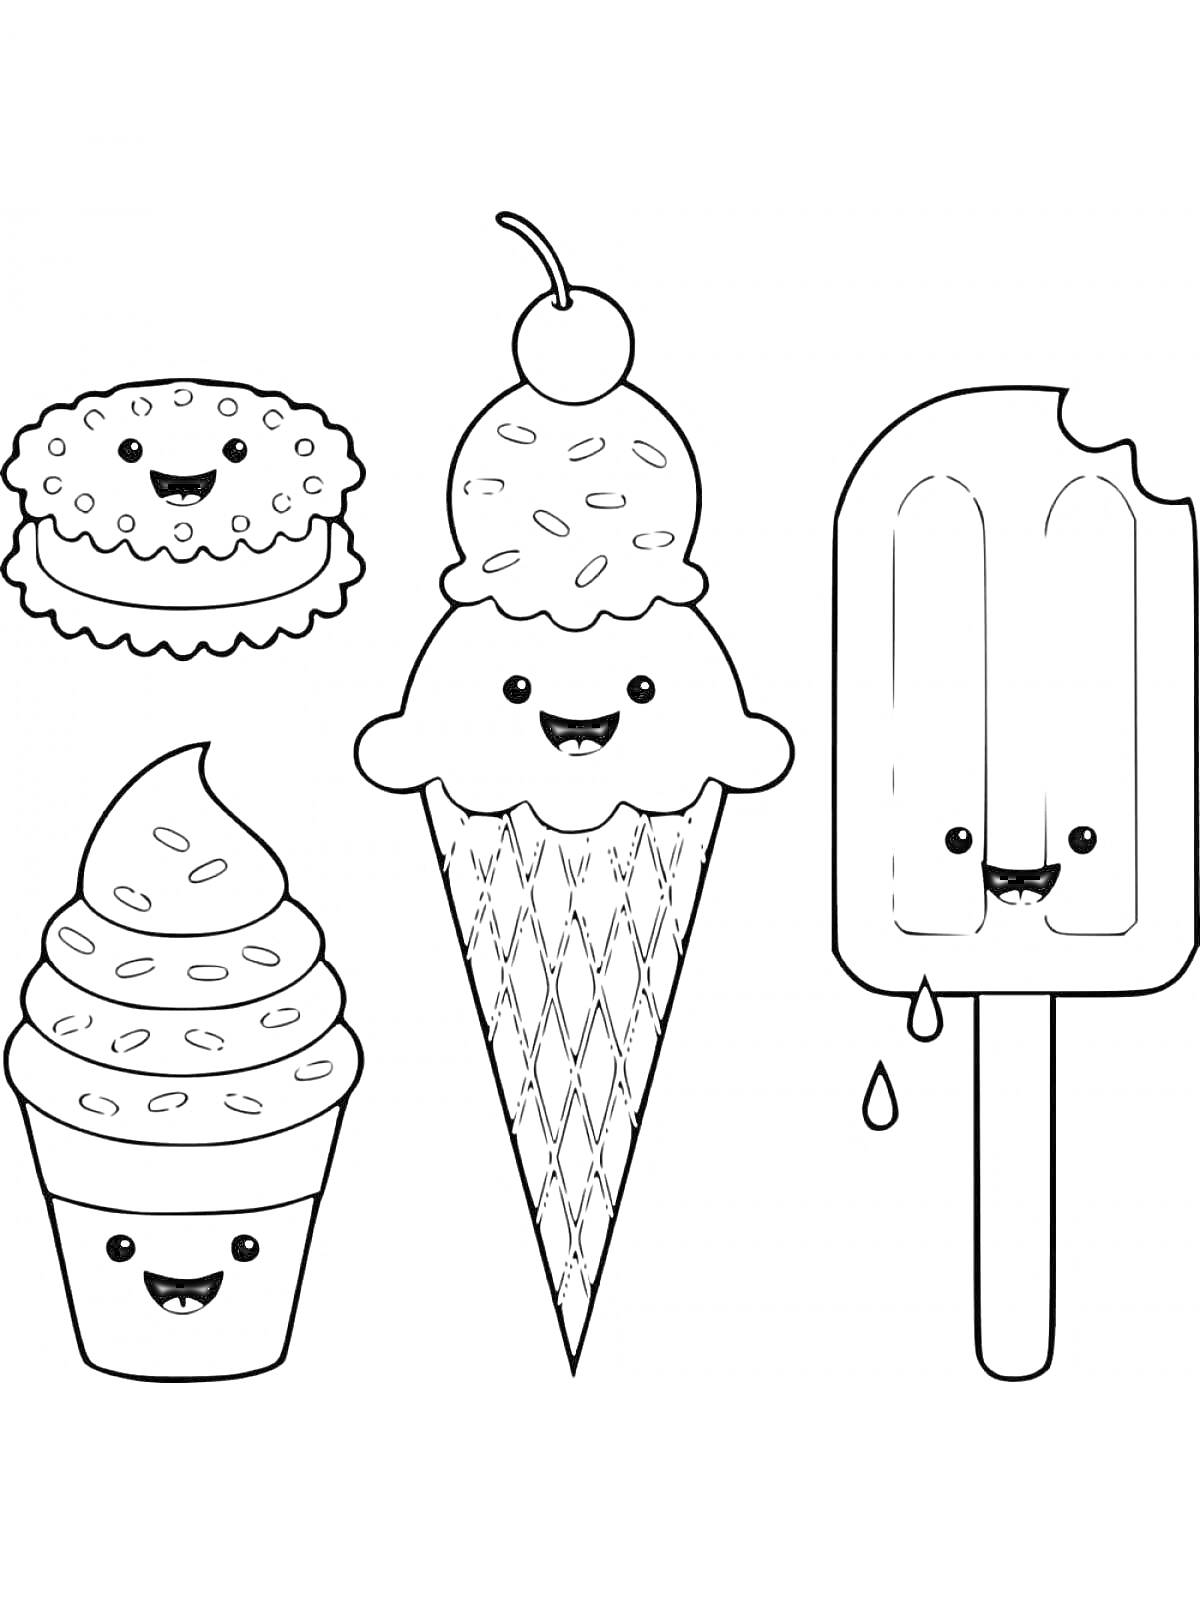 Раскраска Пирожок, мороженое с шариком в вафельном рожке с вишенкой, мороженое в стаканчике, эскимо на палочке